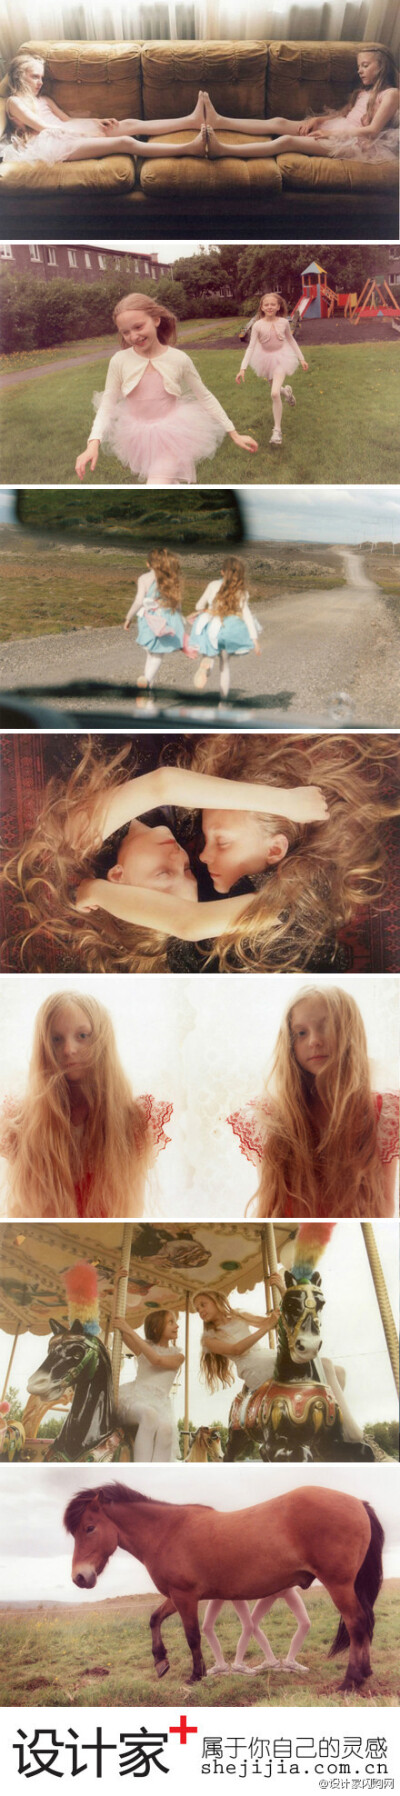 #设计家映像志#2009年，日本人文摄影师Ariko Inaoka透过镜头记录来自冰岛9岁的梦幻空灵双胞胎Erna和Hrefna 长达7年，就连英国摇滚天团Radioghead也曾爱不释手的说：这是我这生中看过最棒的摄影作品！